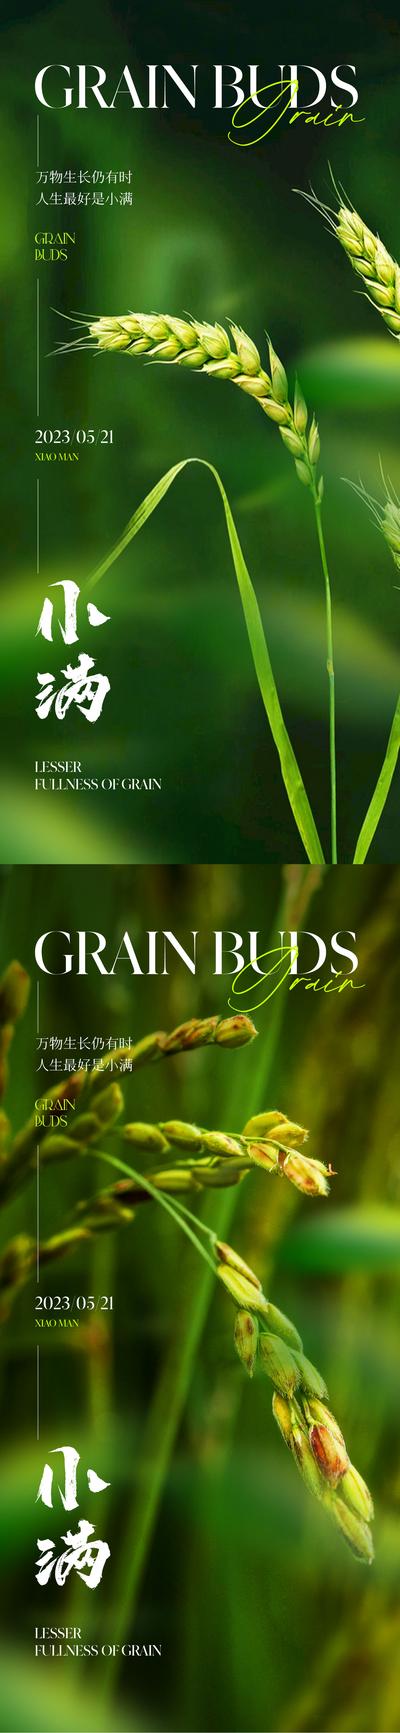 南门网 广告 海报 地产 小满 节气 质感 唯美 麦穗 麦子 小麦 谷物 绿色 清新 淡雅 高级 品质 版式